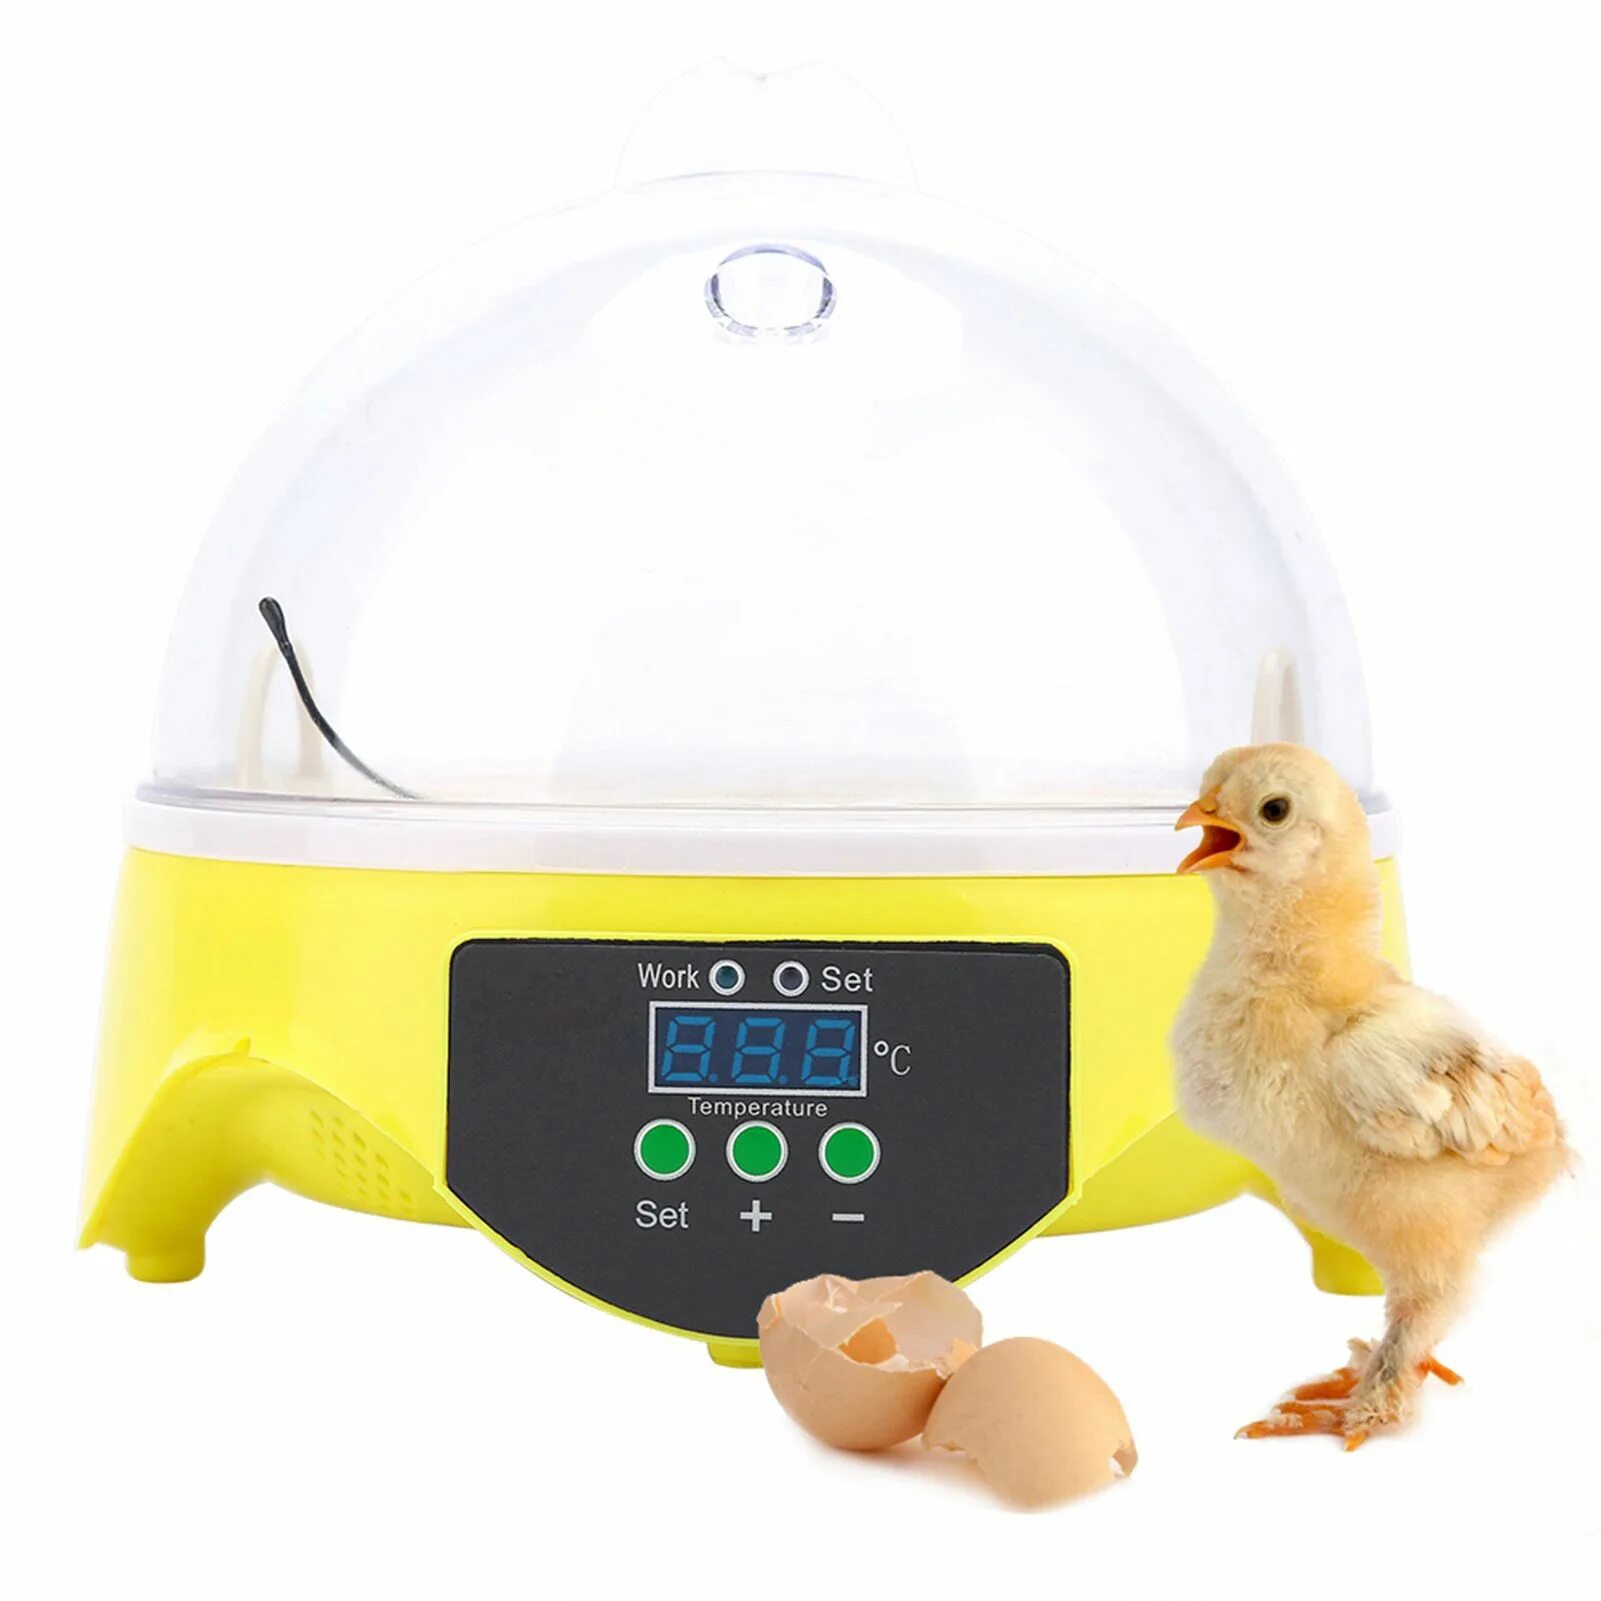 Купить инкубатор для яиц кур. Инкубатор Egg incubator. Инкубатор мини-Брудер. Инкубатор Mini Egg incubator 9 яиц. Инкубатор Egg incubator 6 яиц.